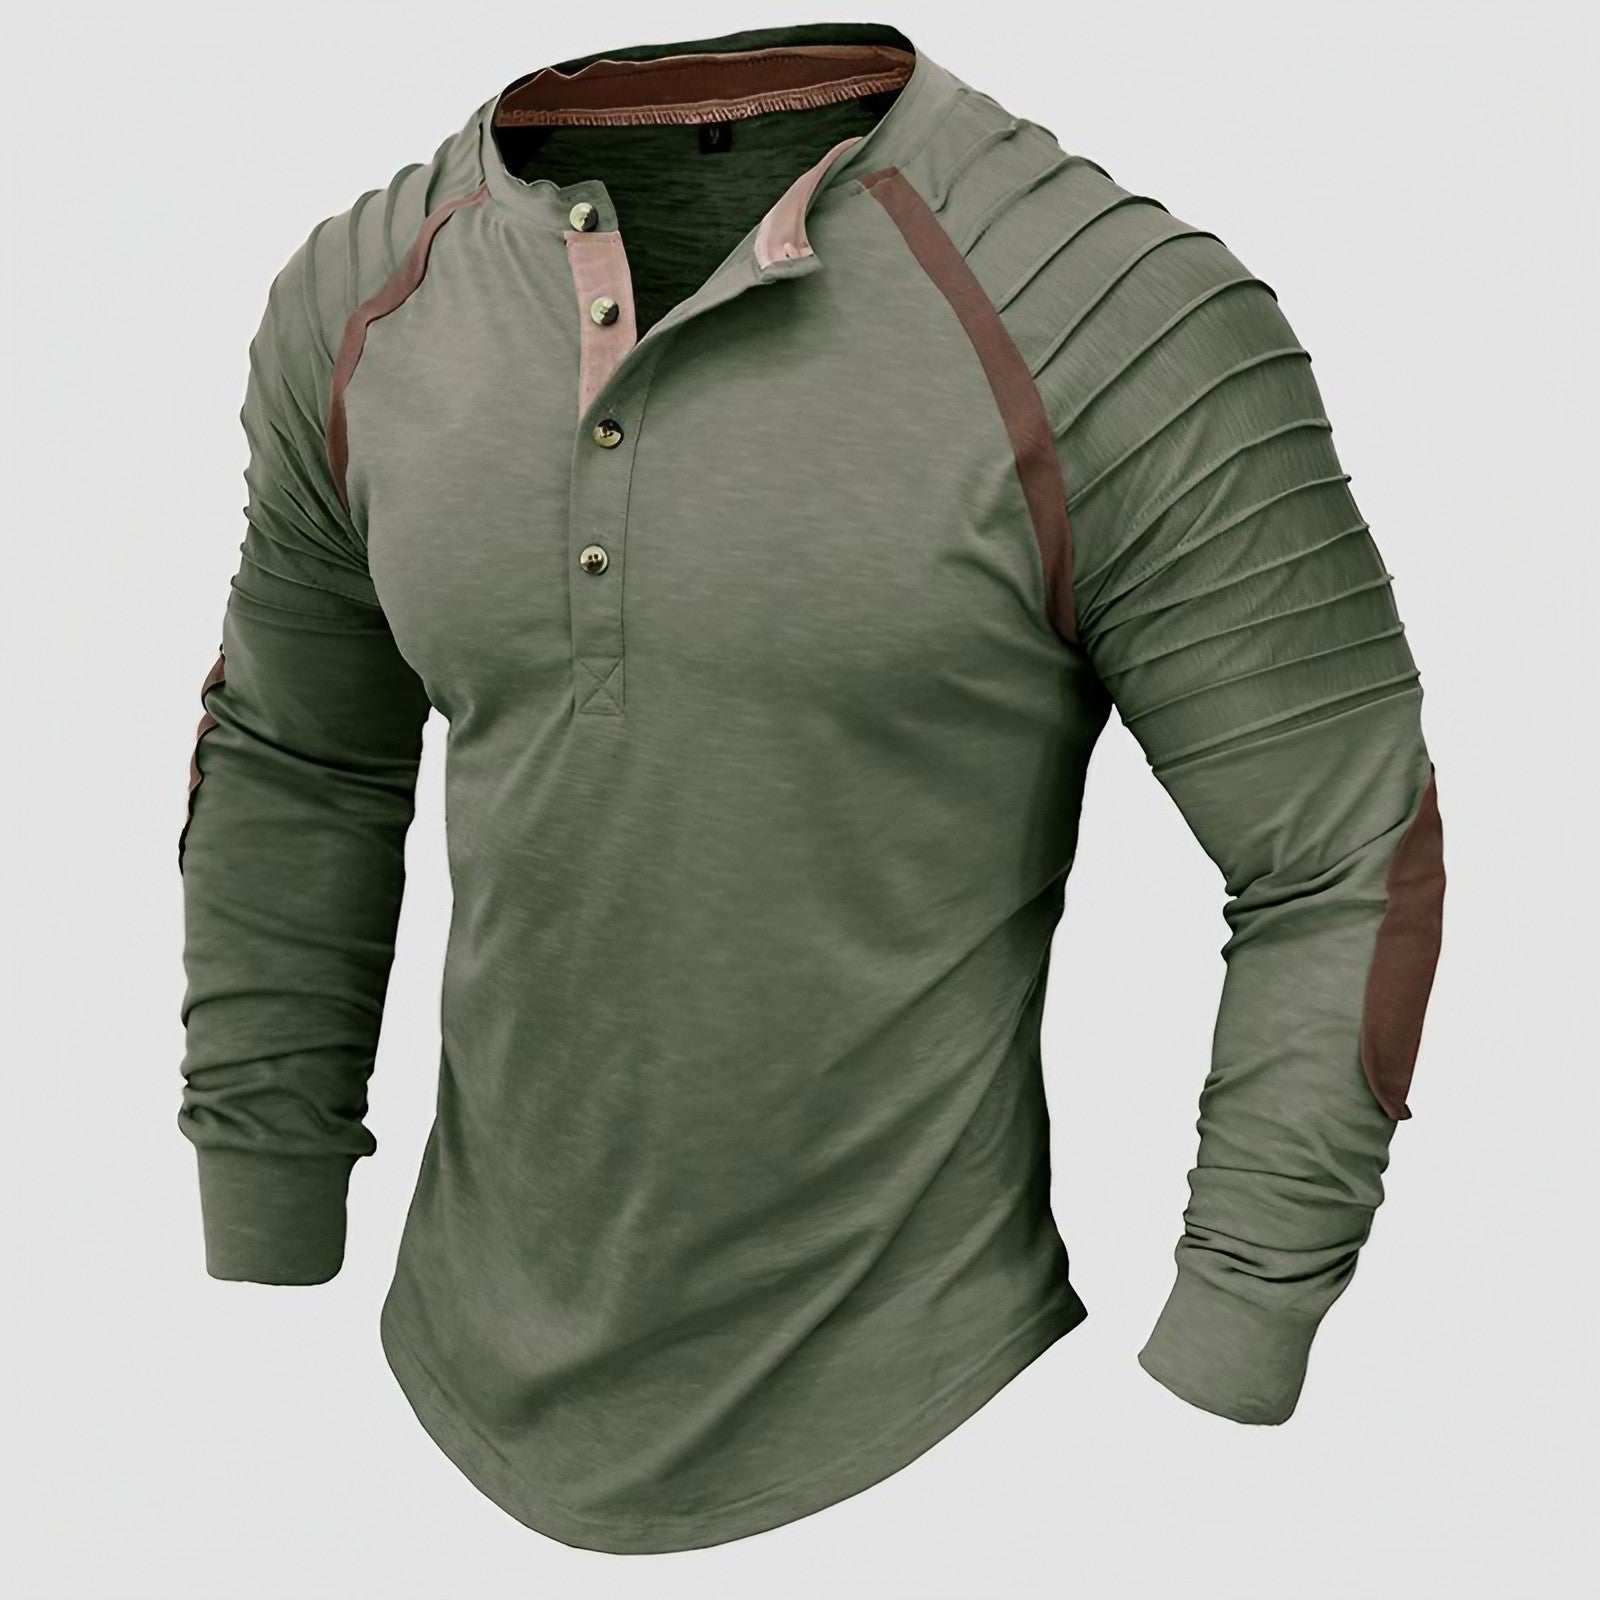 Men's Outdoor Long Sleeve Henley Shirt